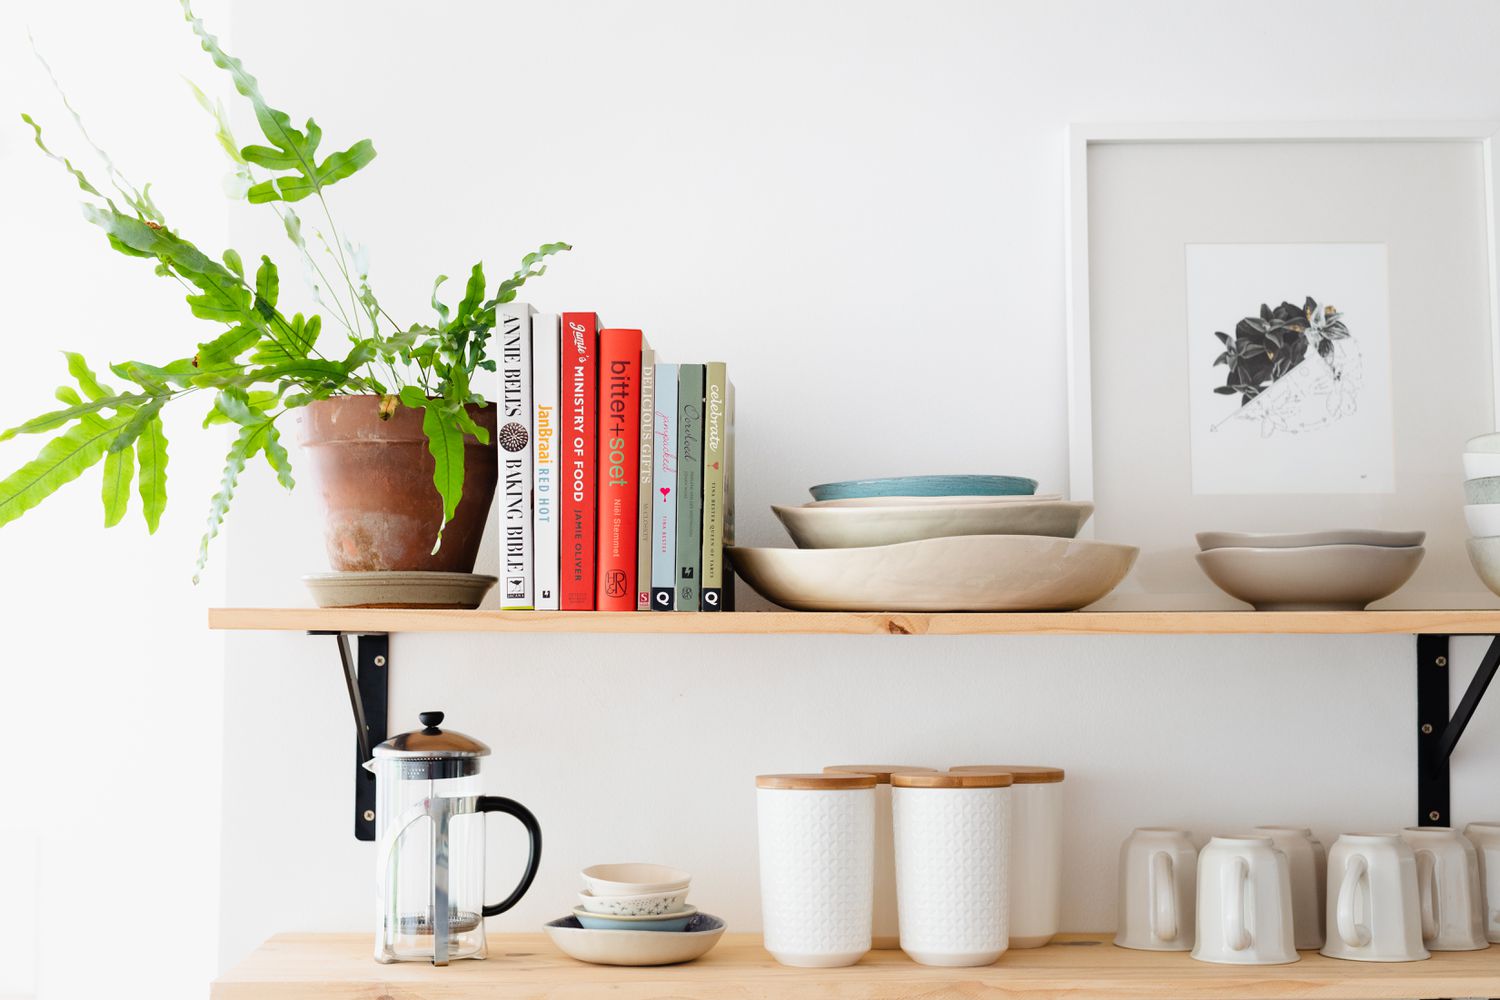 Prateleiras de madeira exibindo livros de receitas e plantas domésticas ao lado de utensílios de cozinha e cafeteira